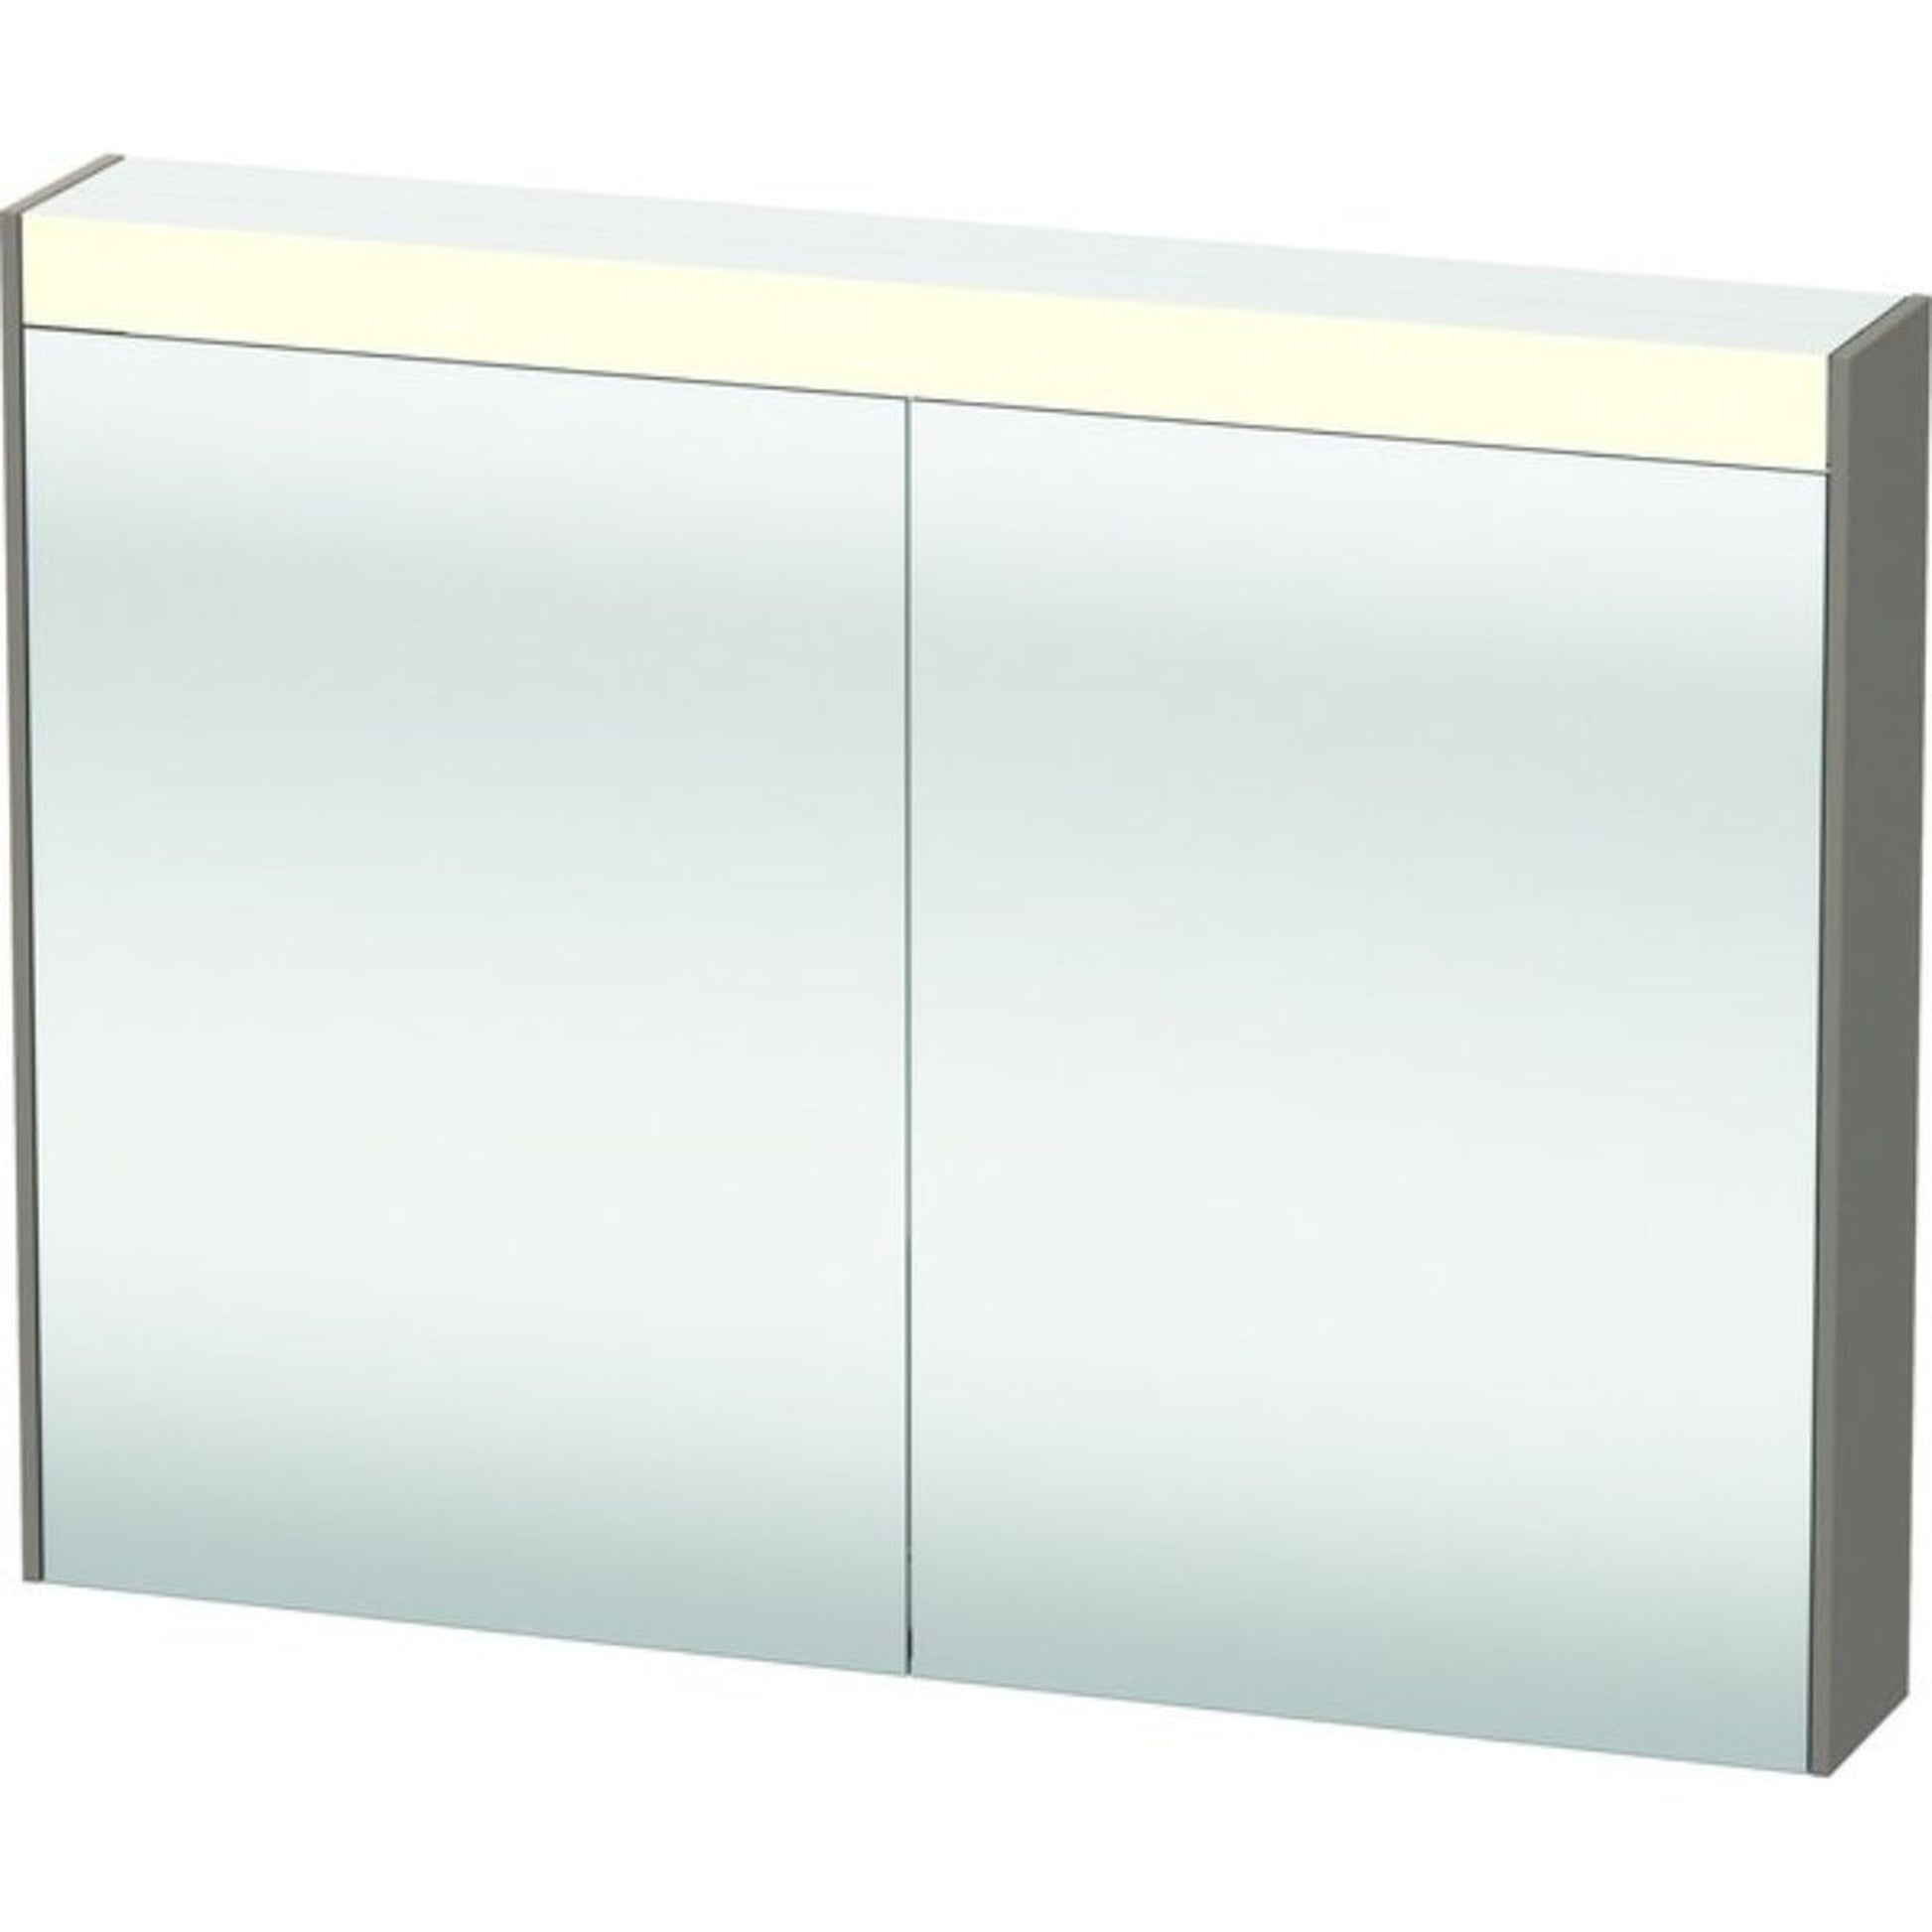 Duravit Brioso 32" x 30" x 6" Mirror Cabinet With Lighting Basalt Matt